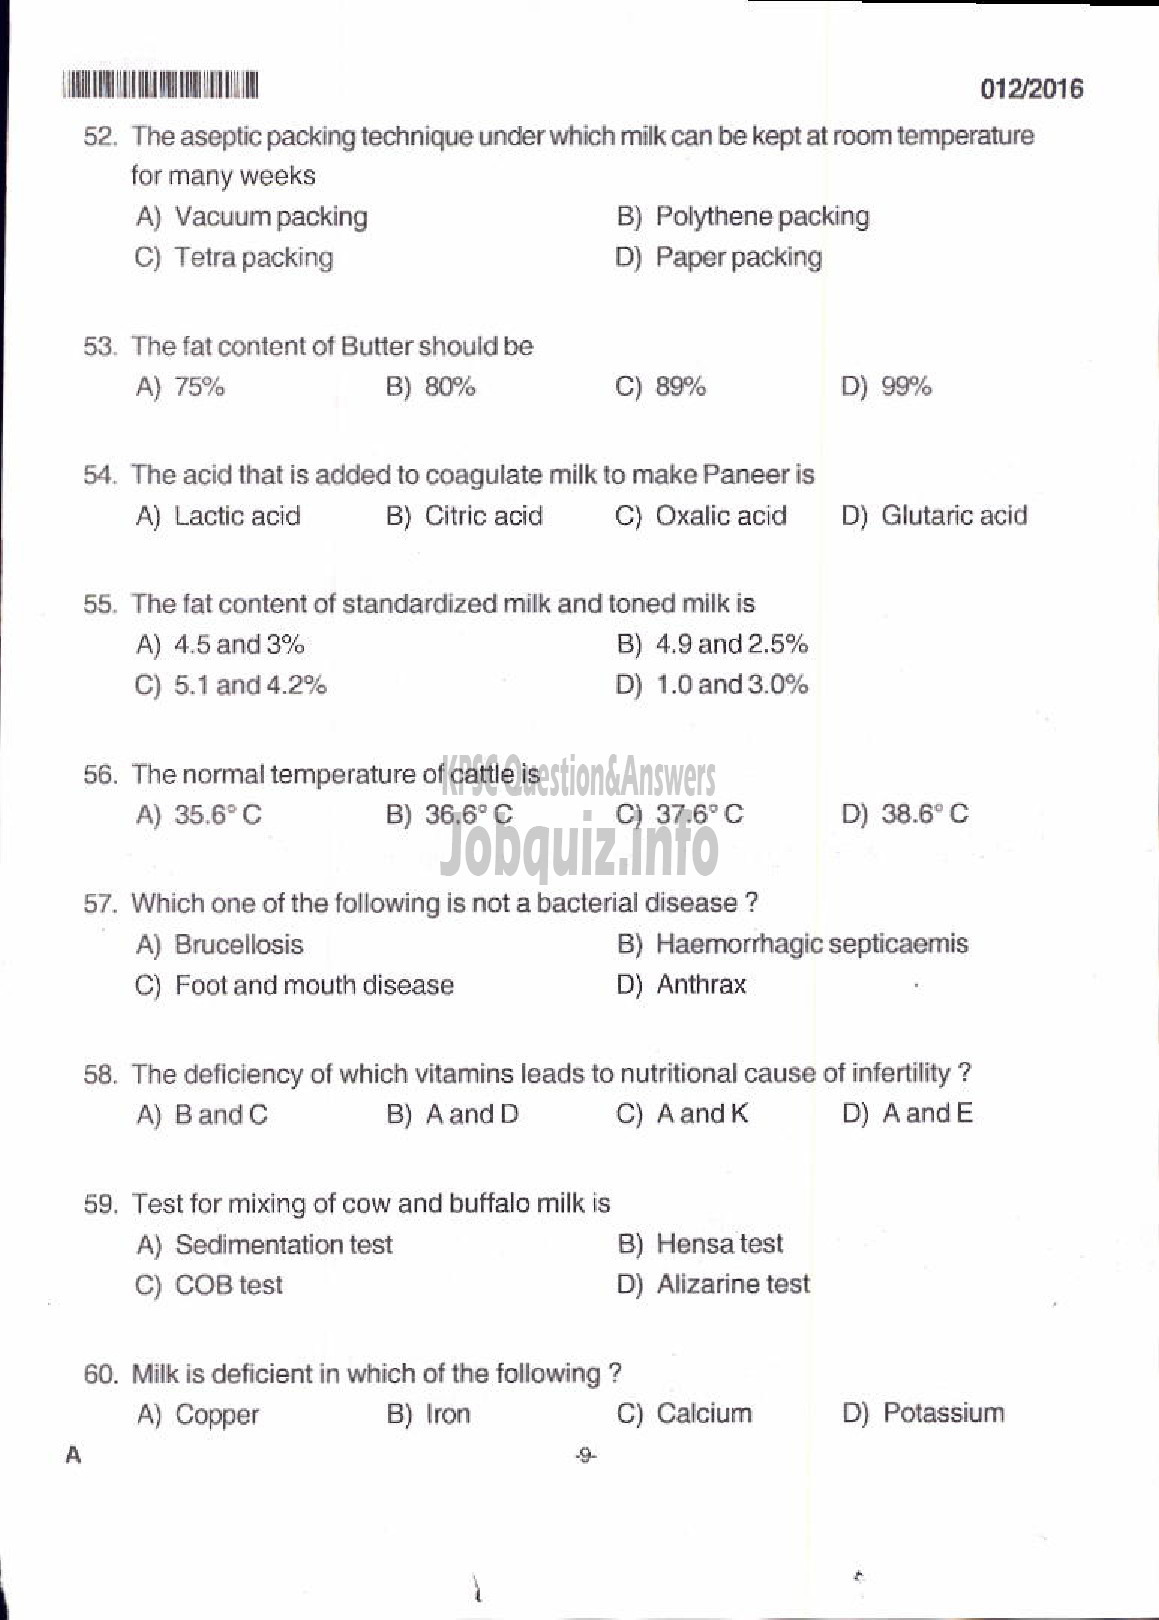 Kerala PSC Question Paper - LIVESTOCK INSPECTOR GR II/SUPERVISOR KLDB LTD QUESTION PAPER-7